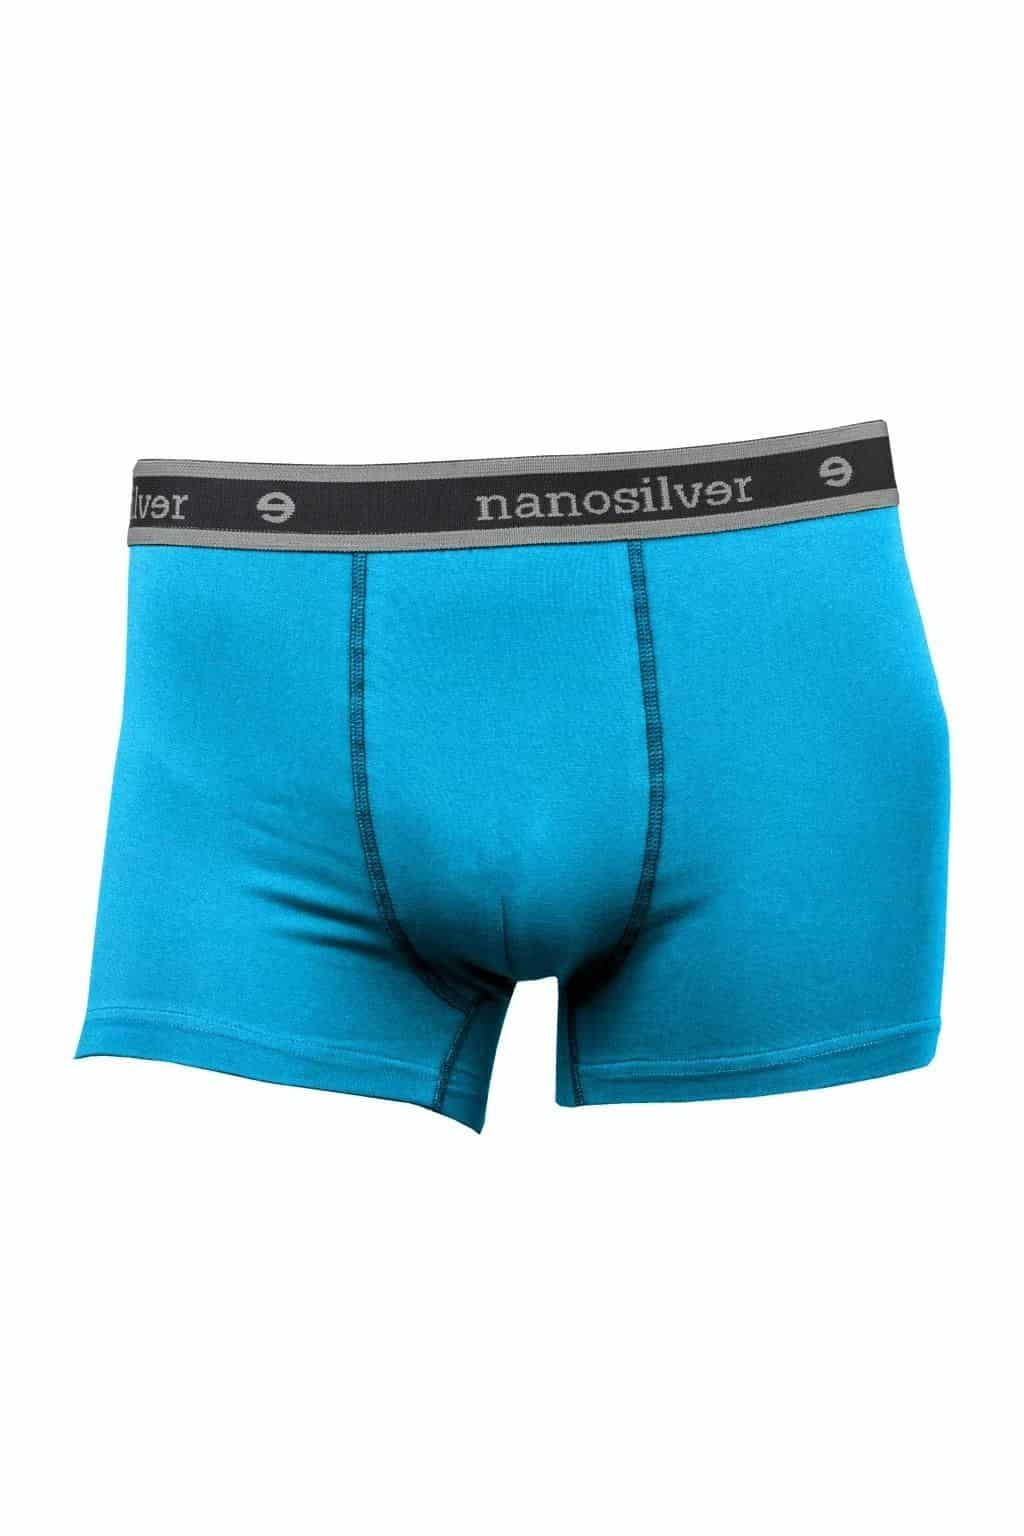 nanosilver® Nano boxerky s gumou nanosilver bez zadního švu – modré Velikost: M